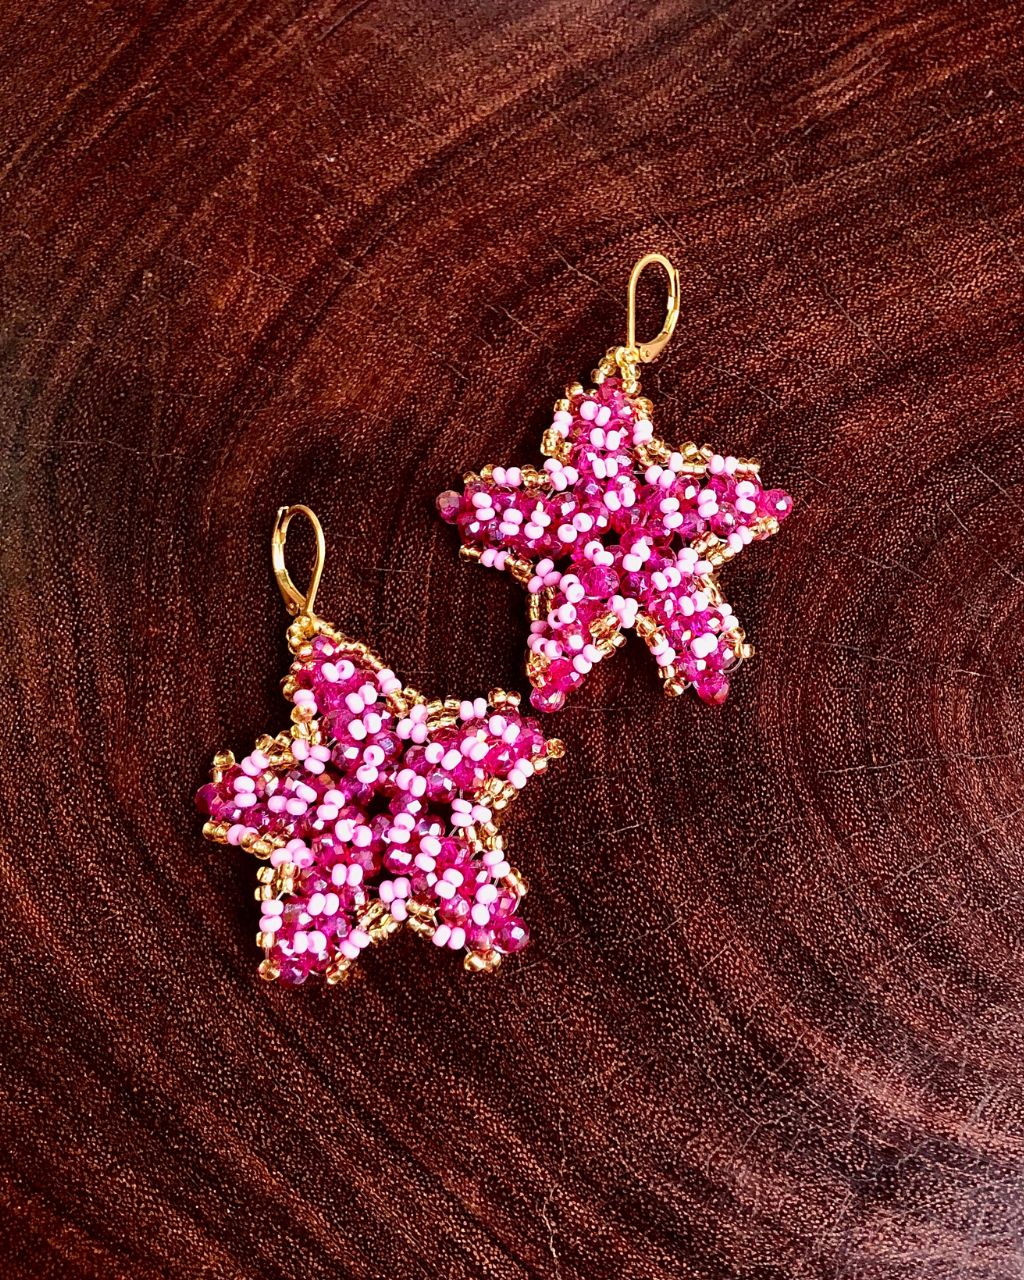 Estrellas de mar hechas a mano de color fucsia.